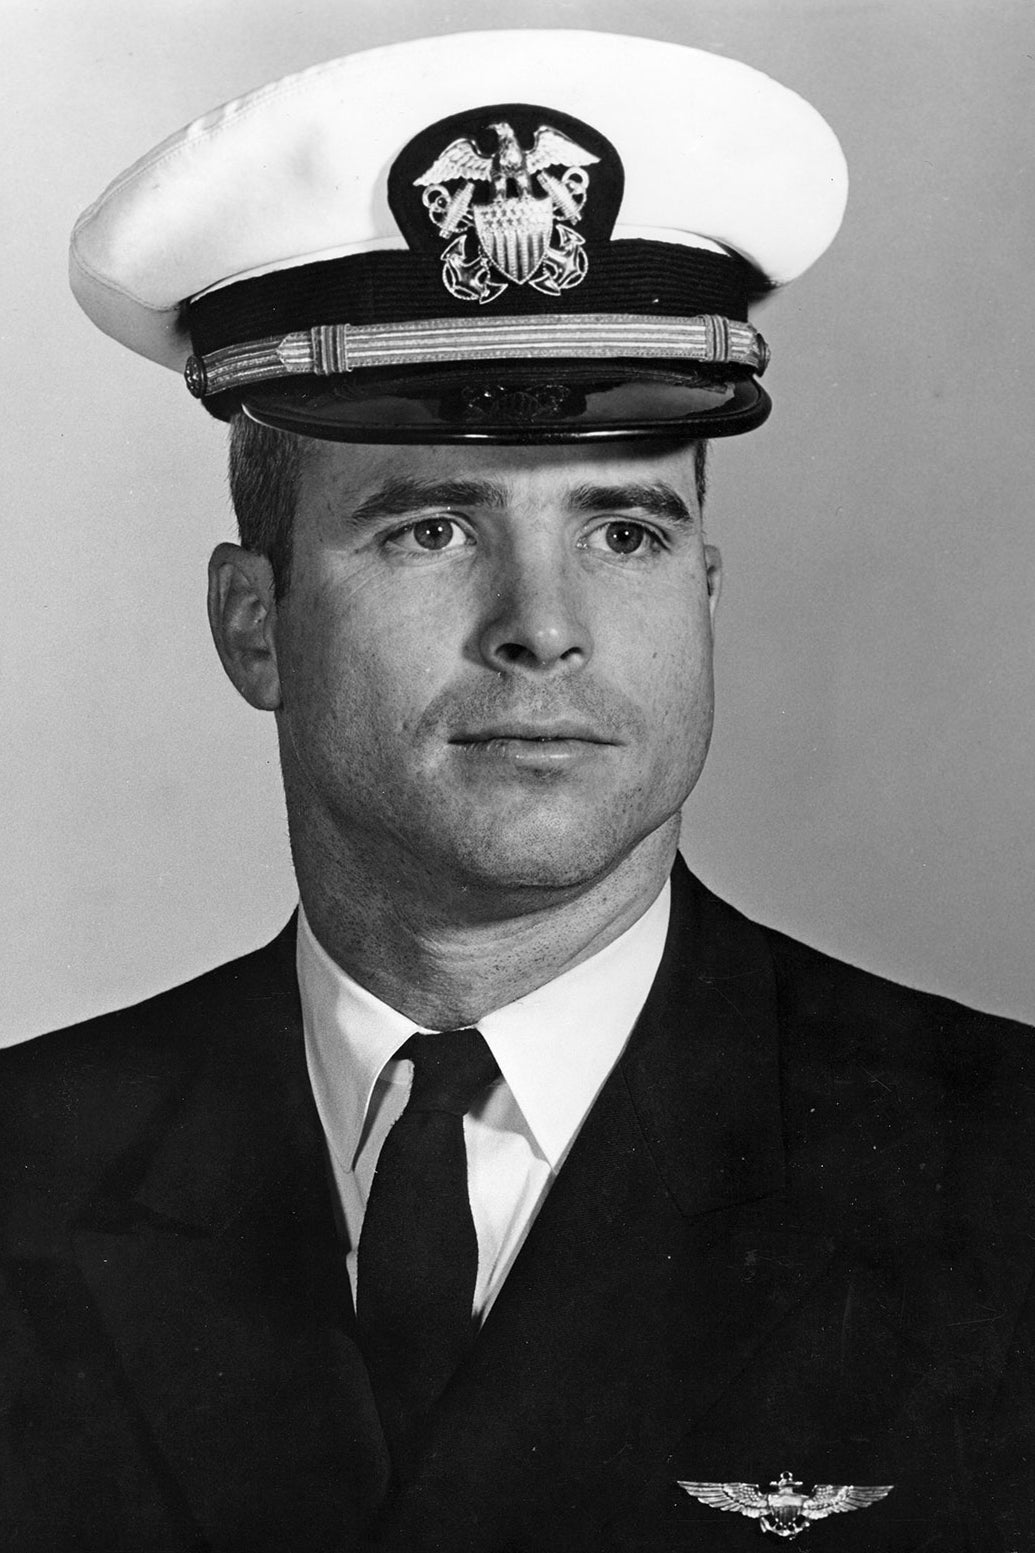 Young John McCain in uniform